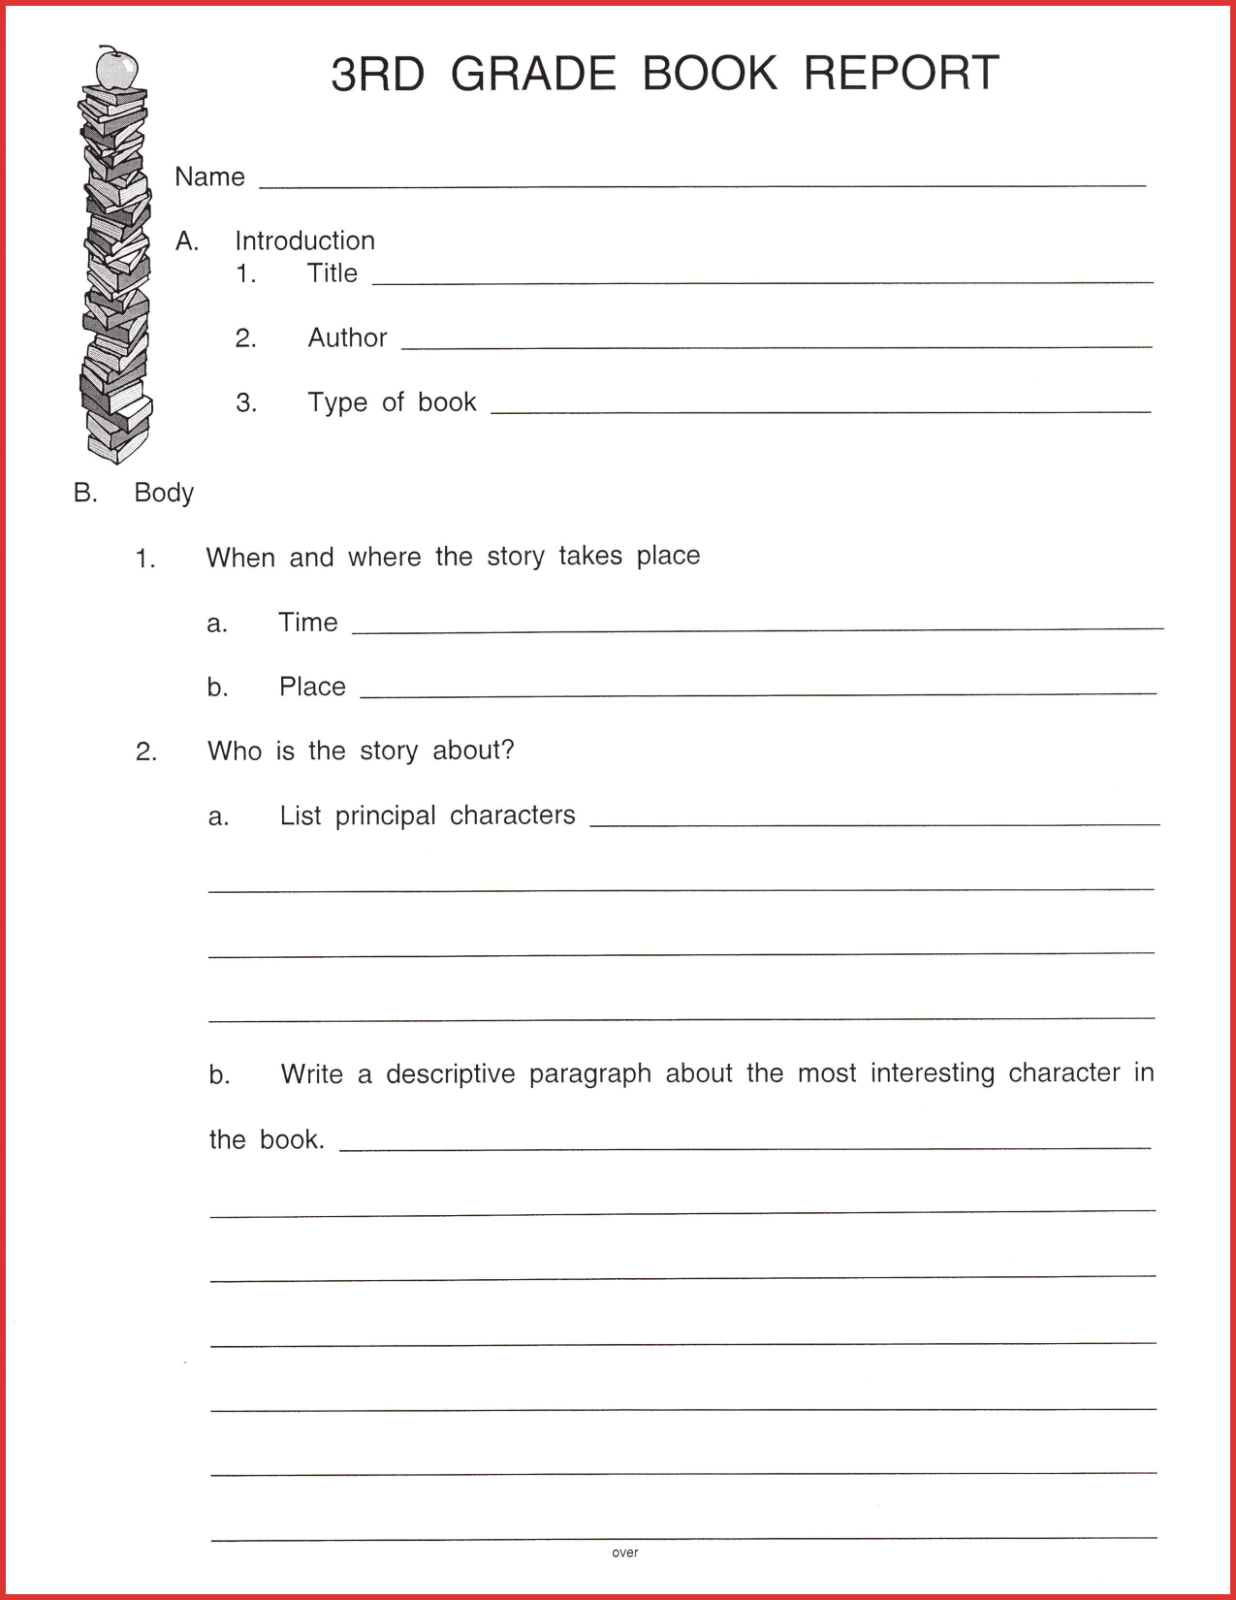 Fresh 3Rd Grade Book Report Template | Job Latter Inside 2Nd Grade Book Report Template